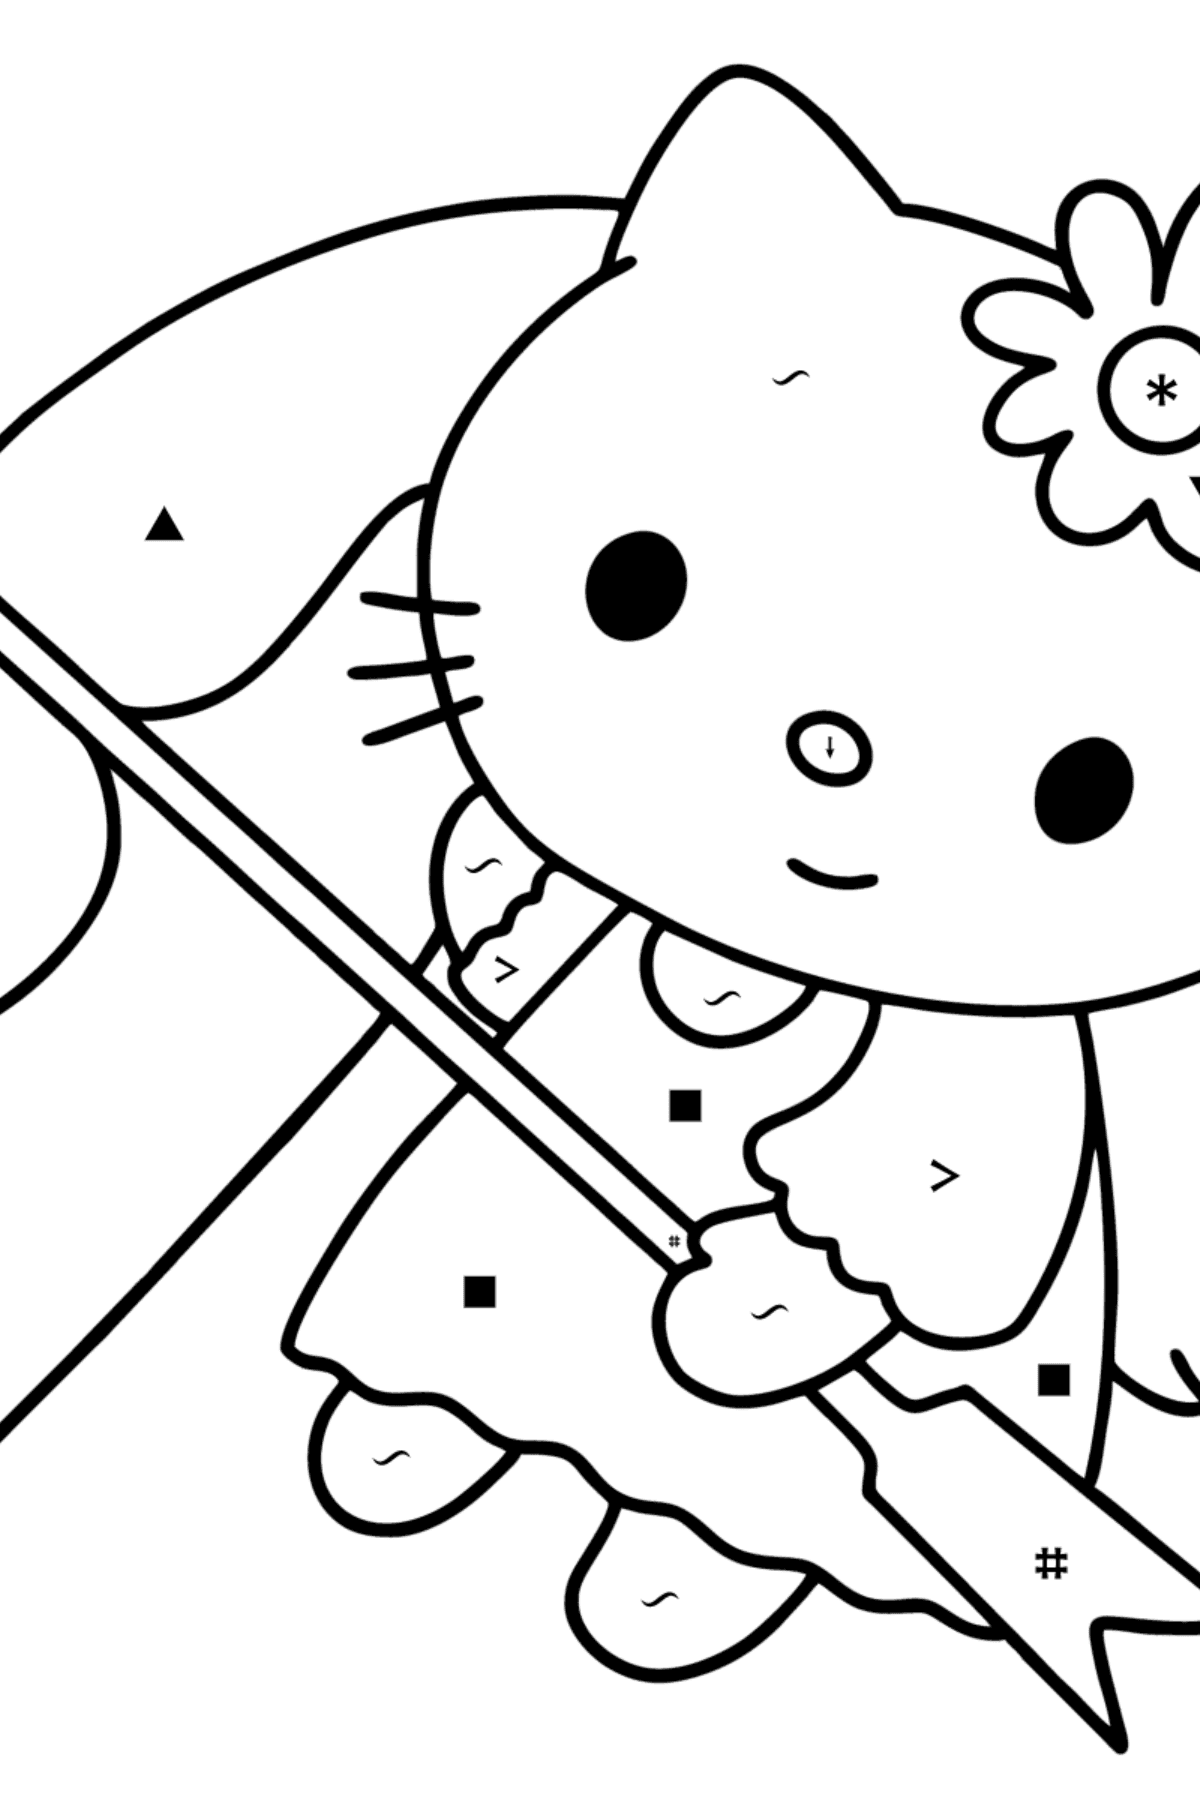 Boyama sayfası Hello Kitty Sevgililer Günü - Sembollerle Boyama çocuklar için